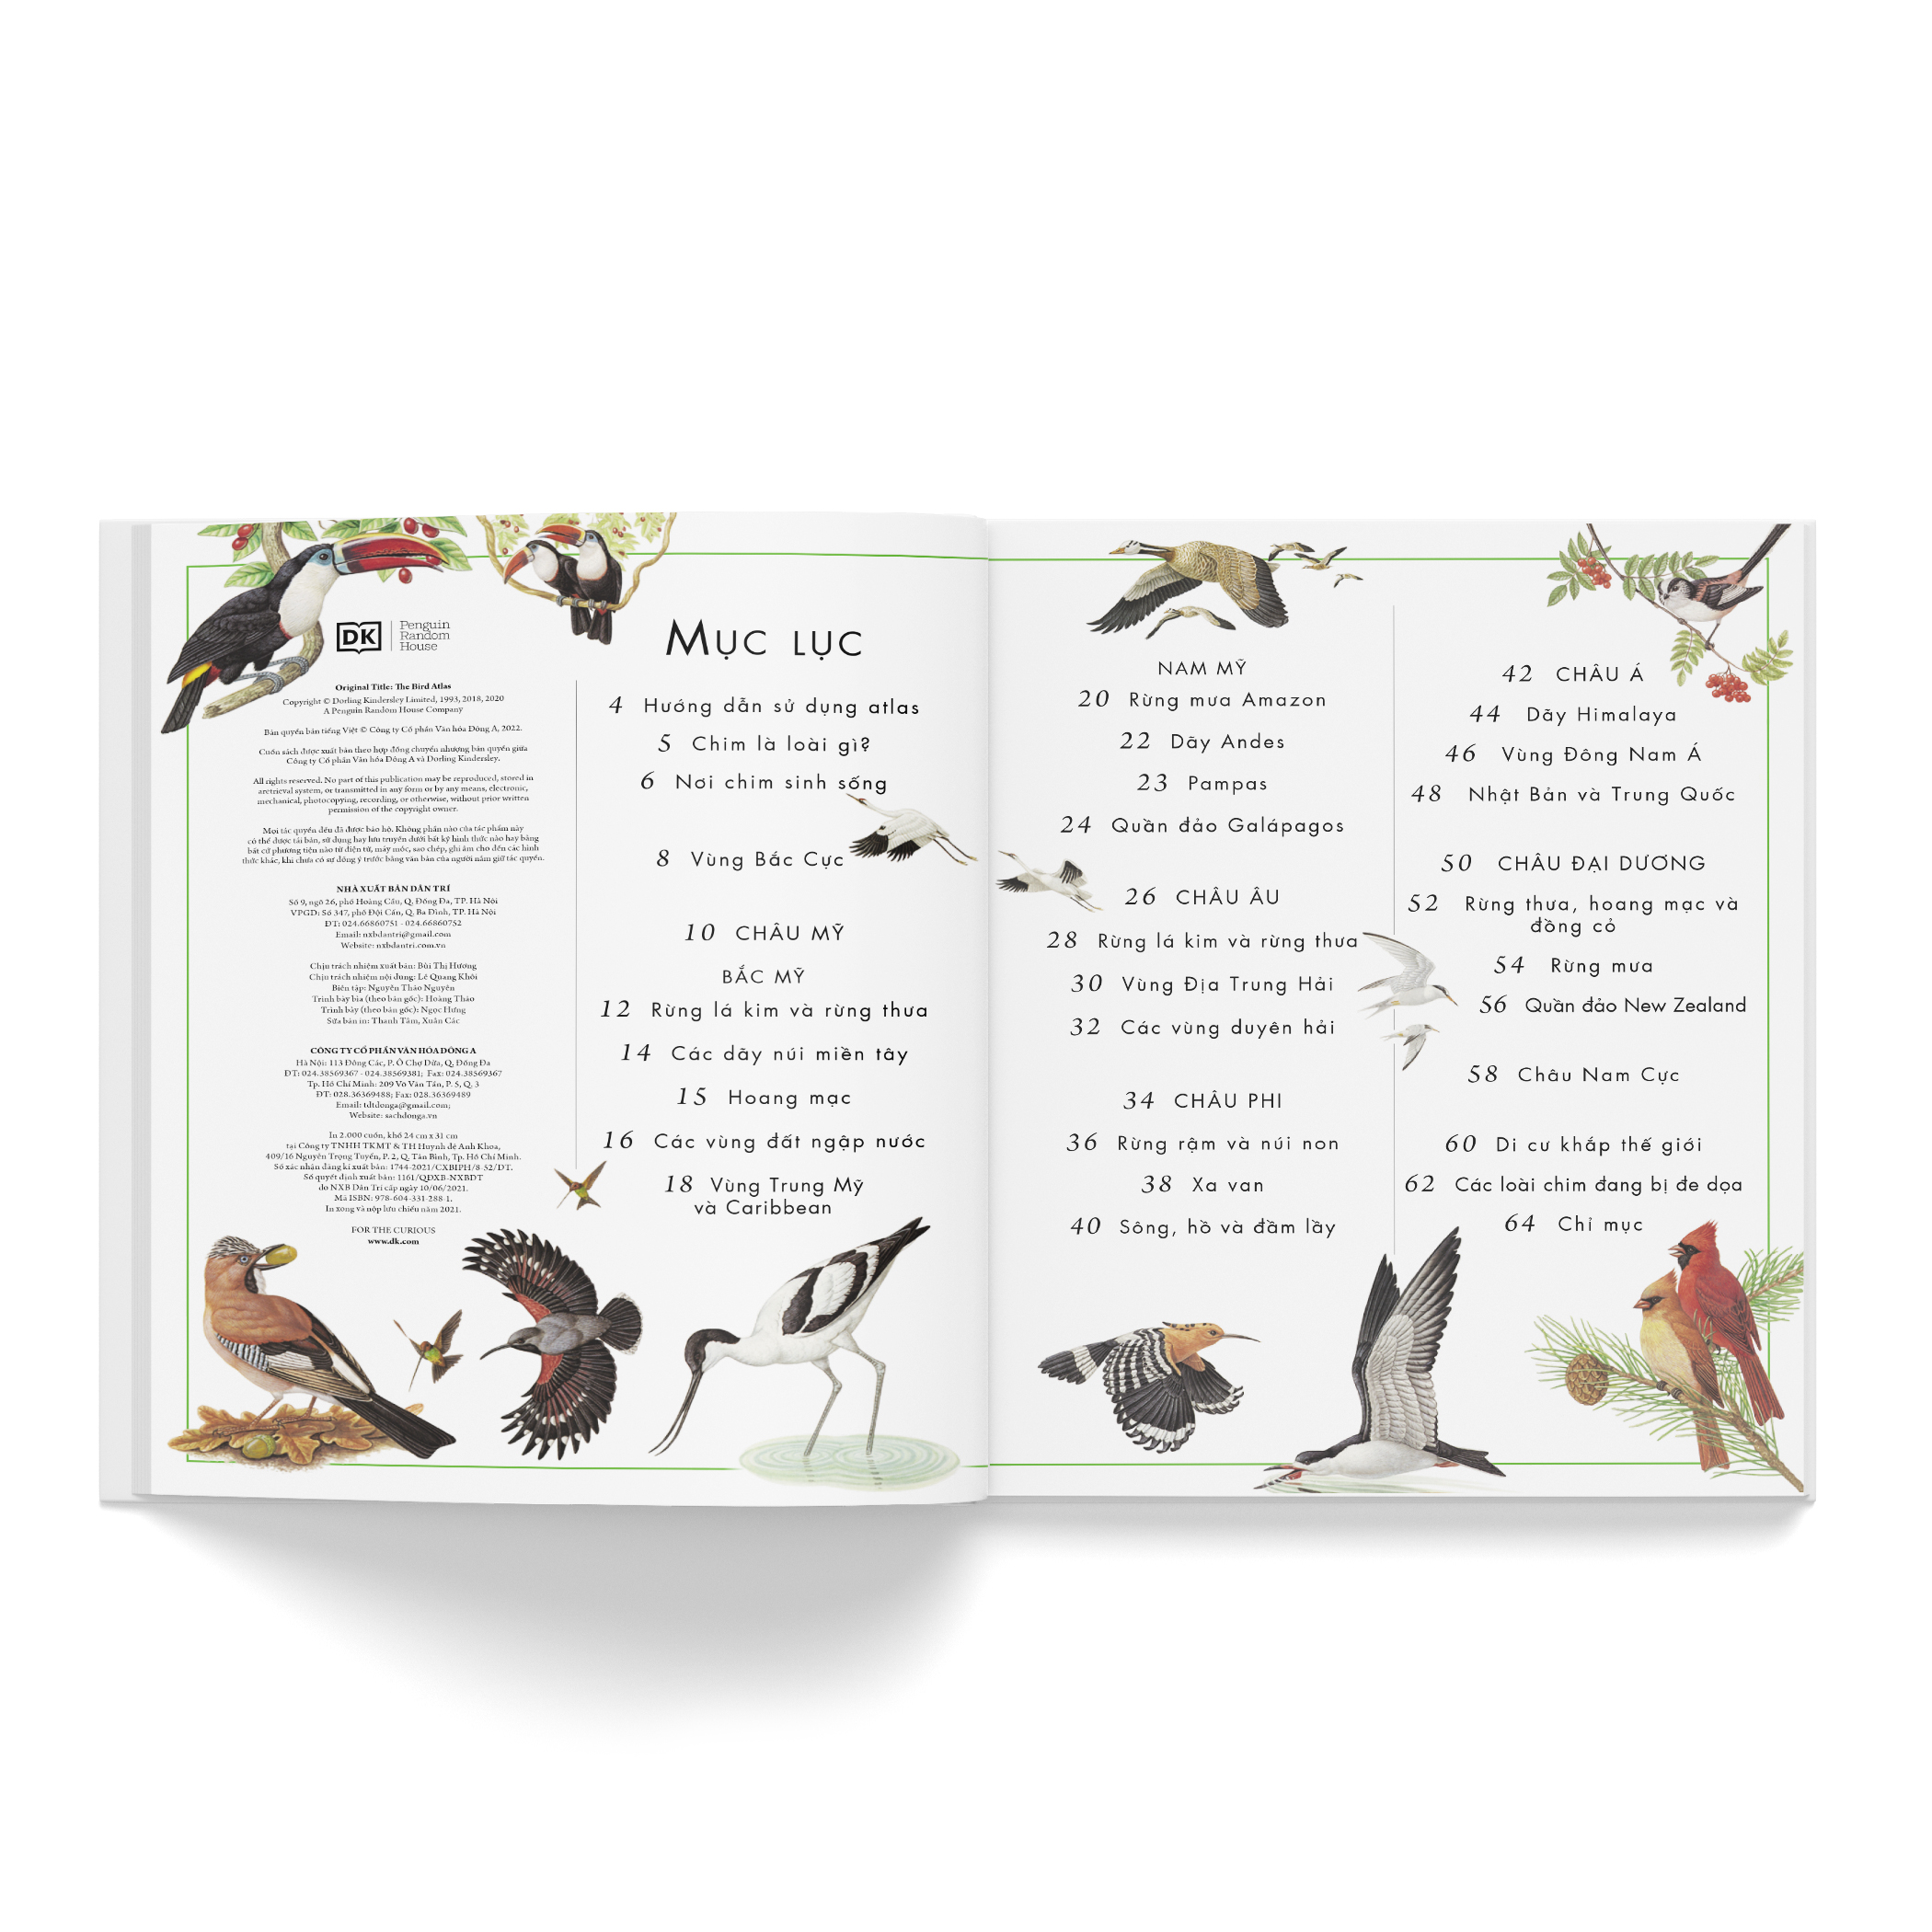 Combo 2 cuốn: Atlas động vật + Atlas các loài chim - Tặng 1 cuốn Vì sao? Như thế nào (Sinh thái hoặc Năng lượng)